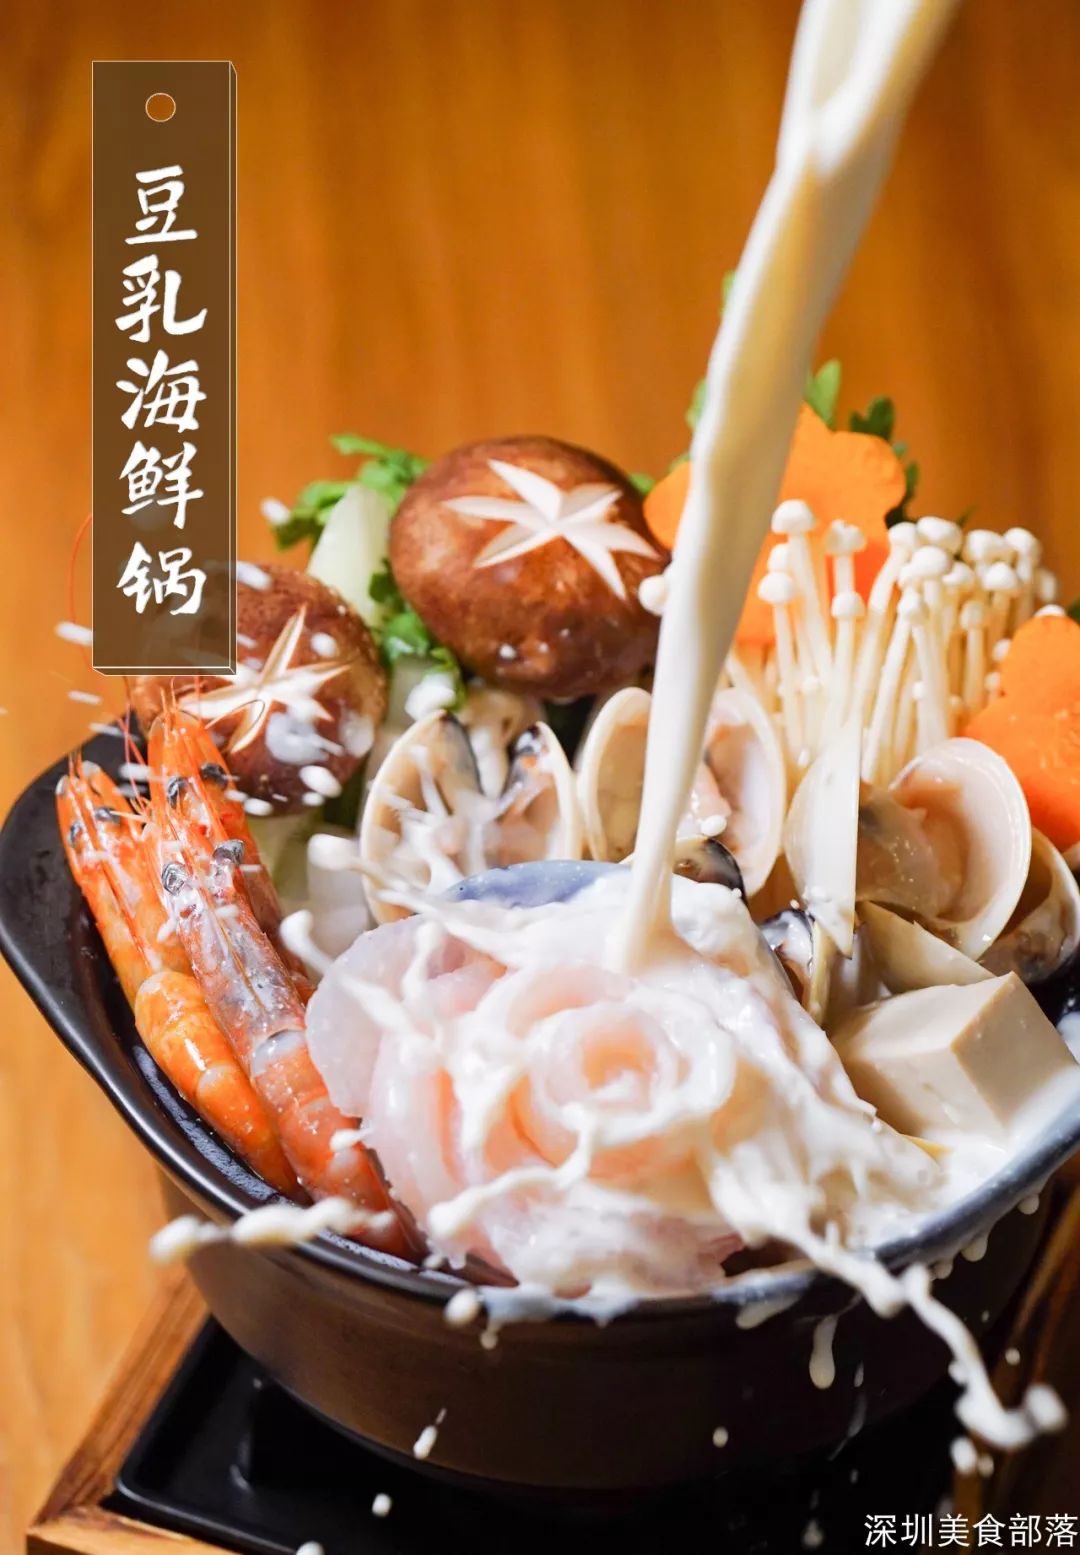 传统的豆乳锅在日本是专门给女生和小孩准备的,跟别的锅物不一样,它